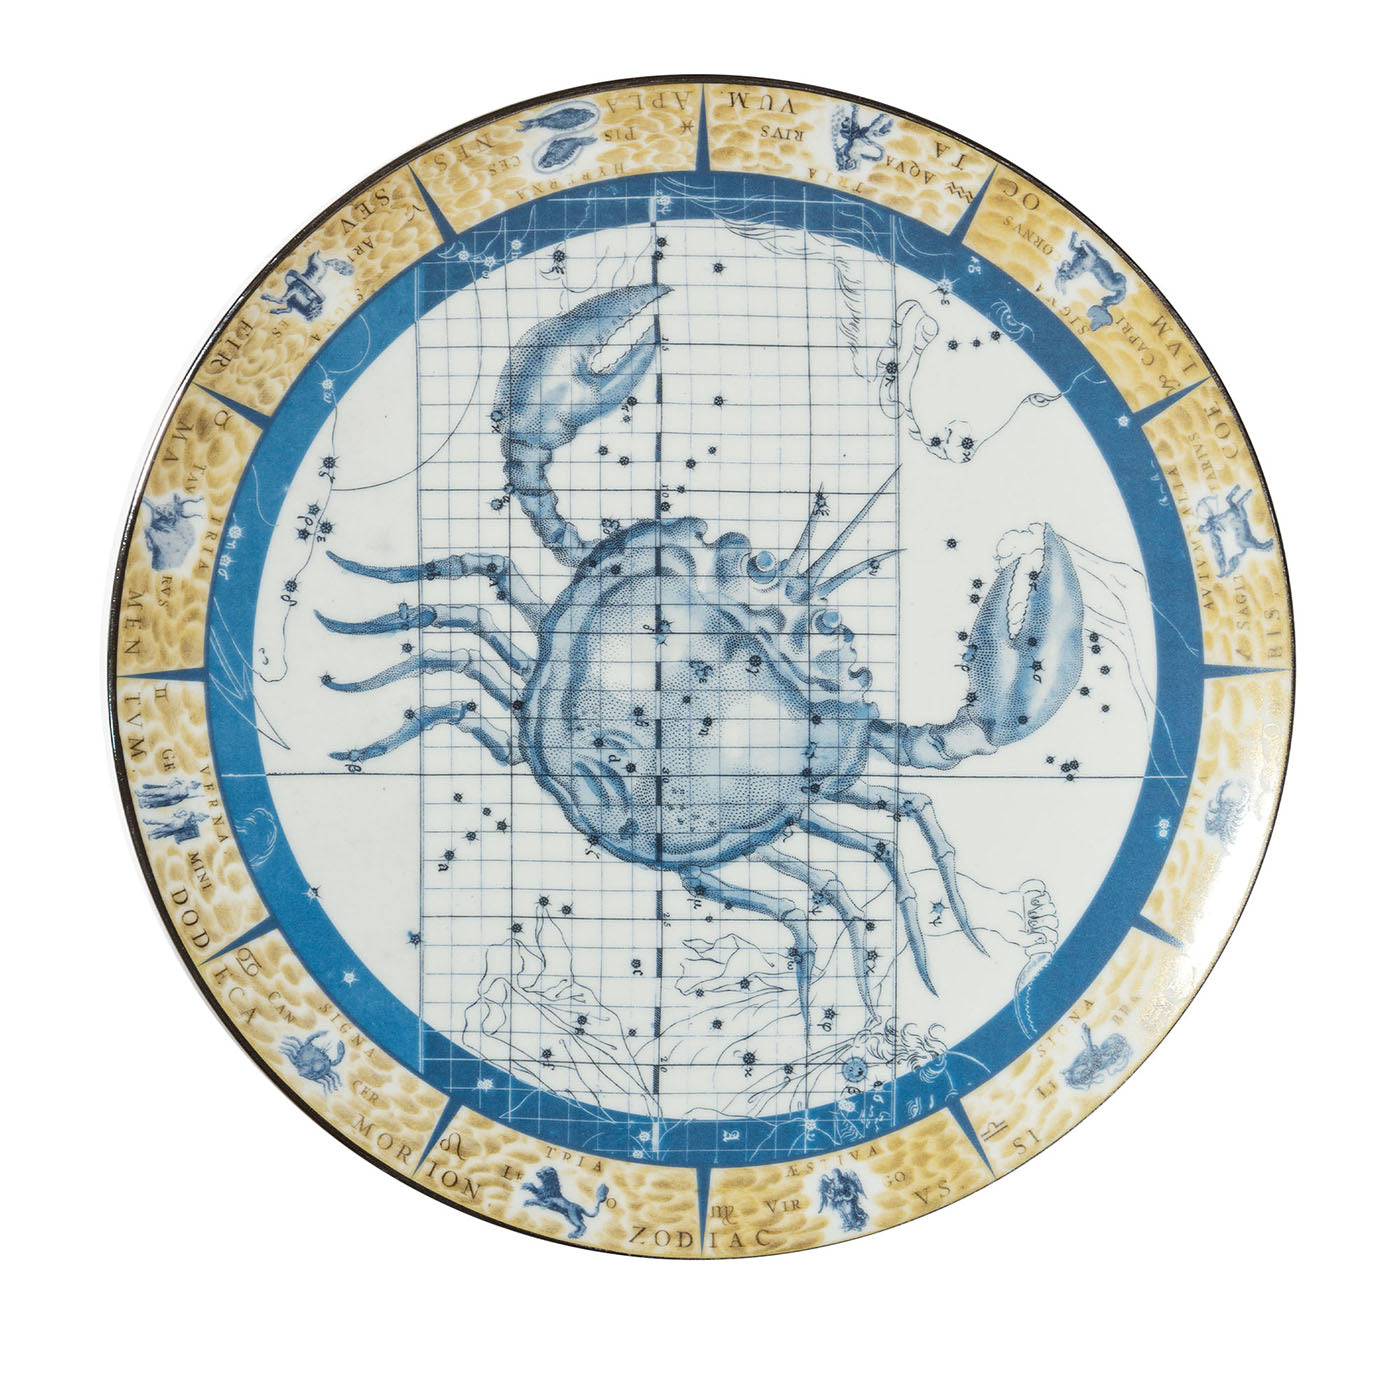 Assiette en porcelaine décorative Zodiacus Cancer - Vue principale